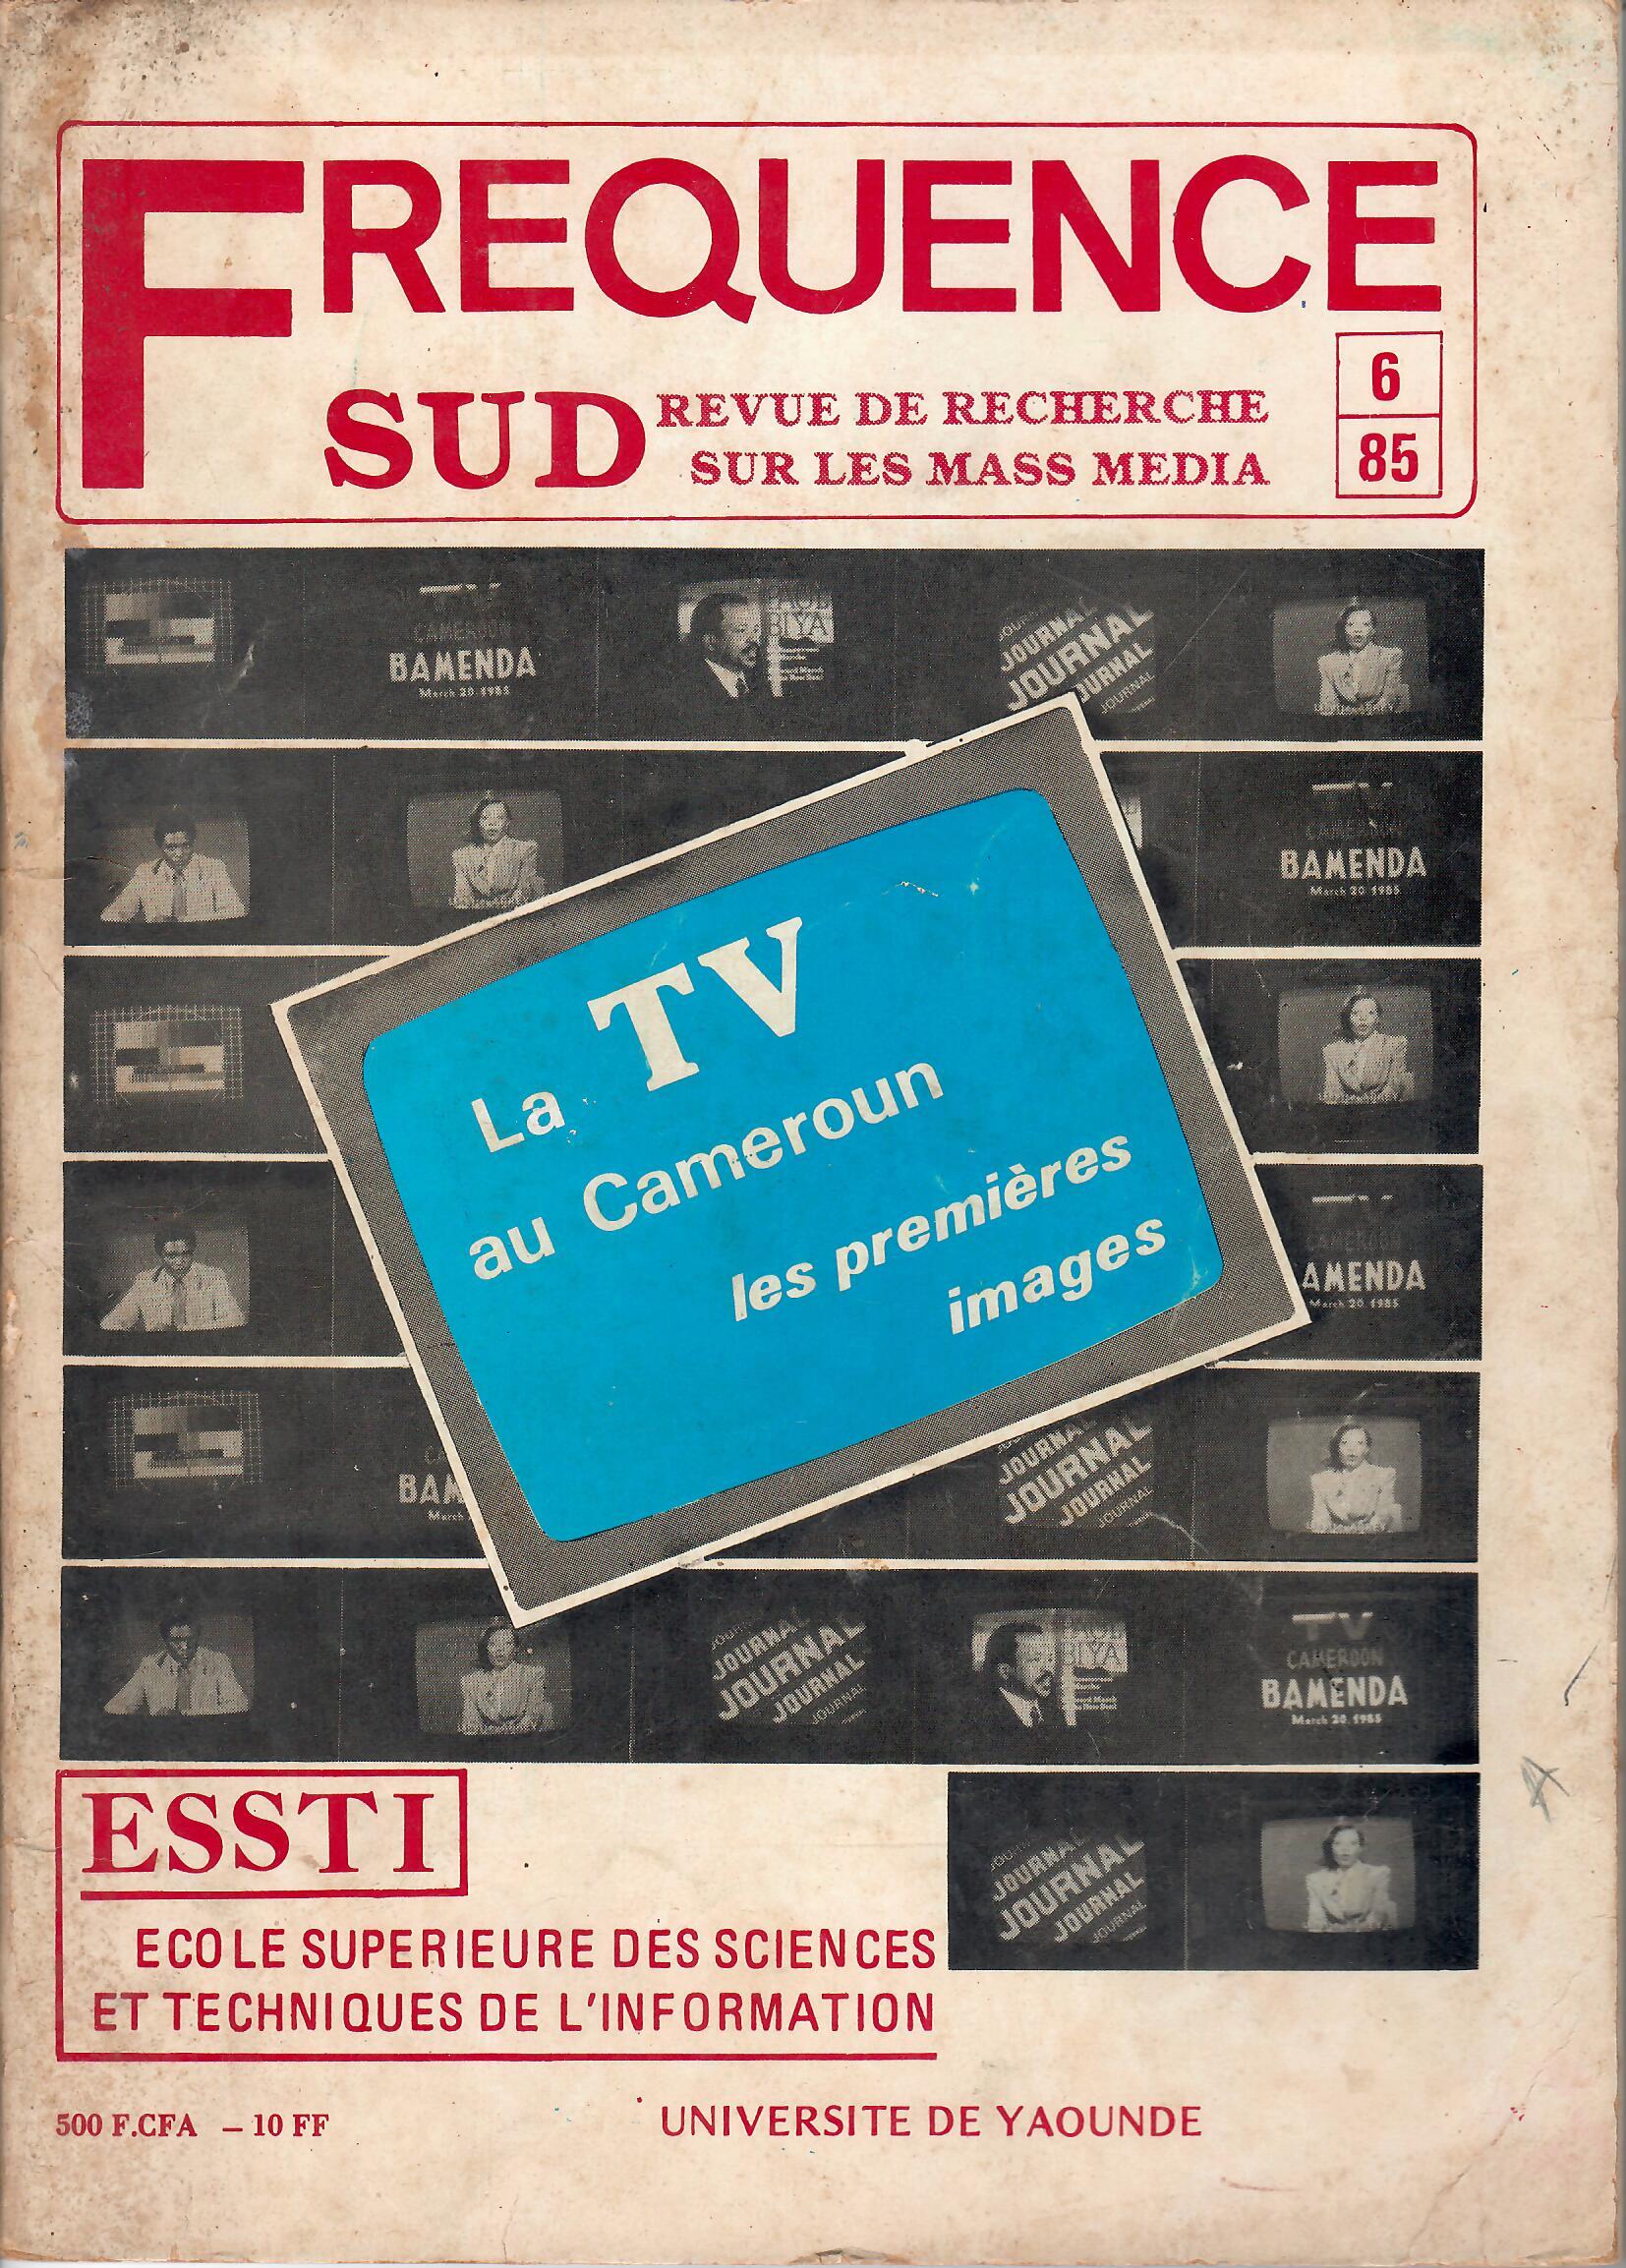 					Afficher No 6 (1985): Fréquence Sud: La TV au CAMEROUN les premières images
				